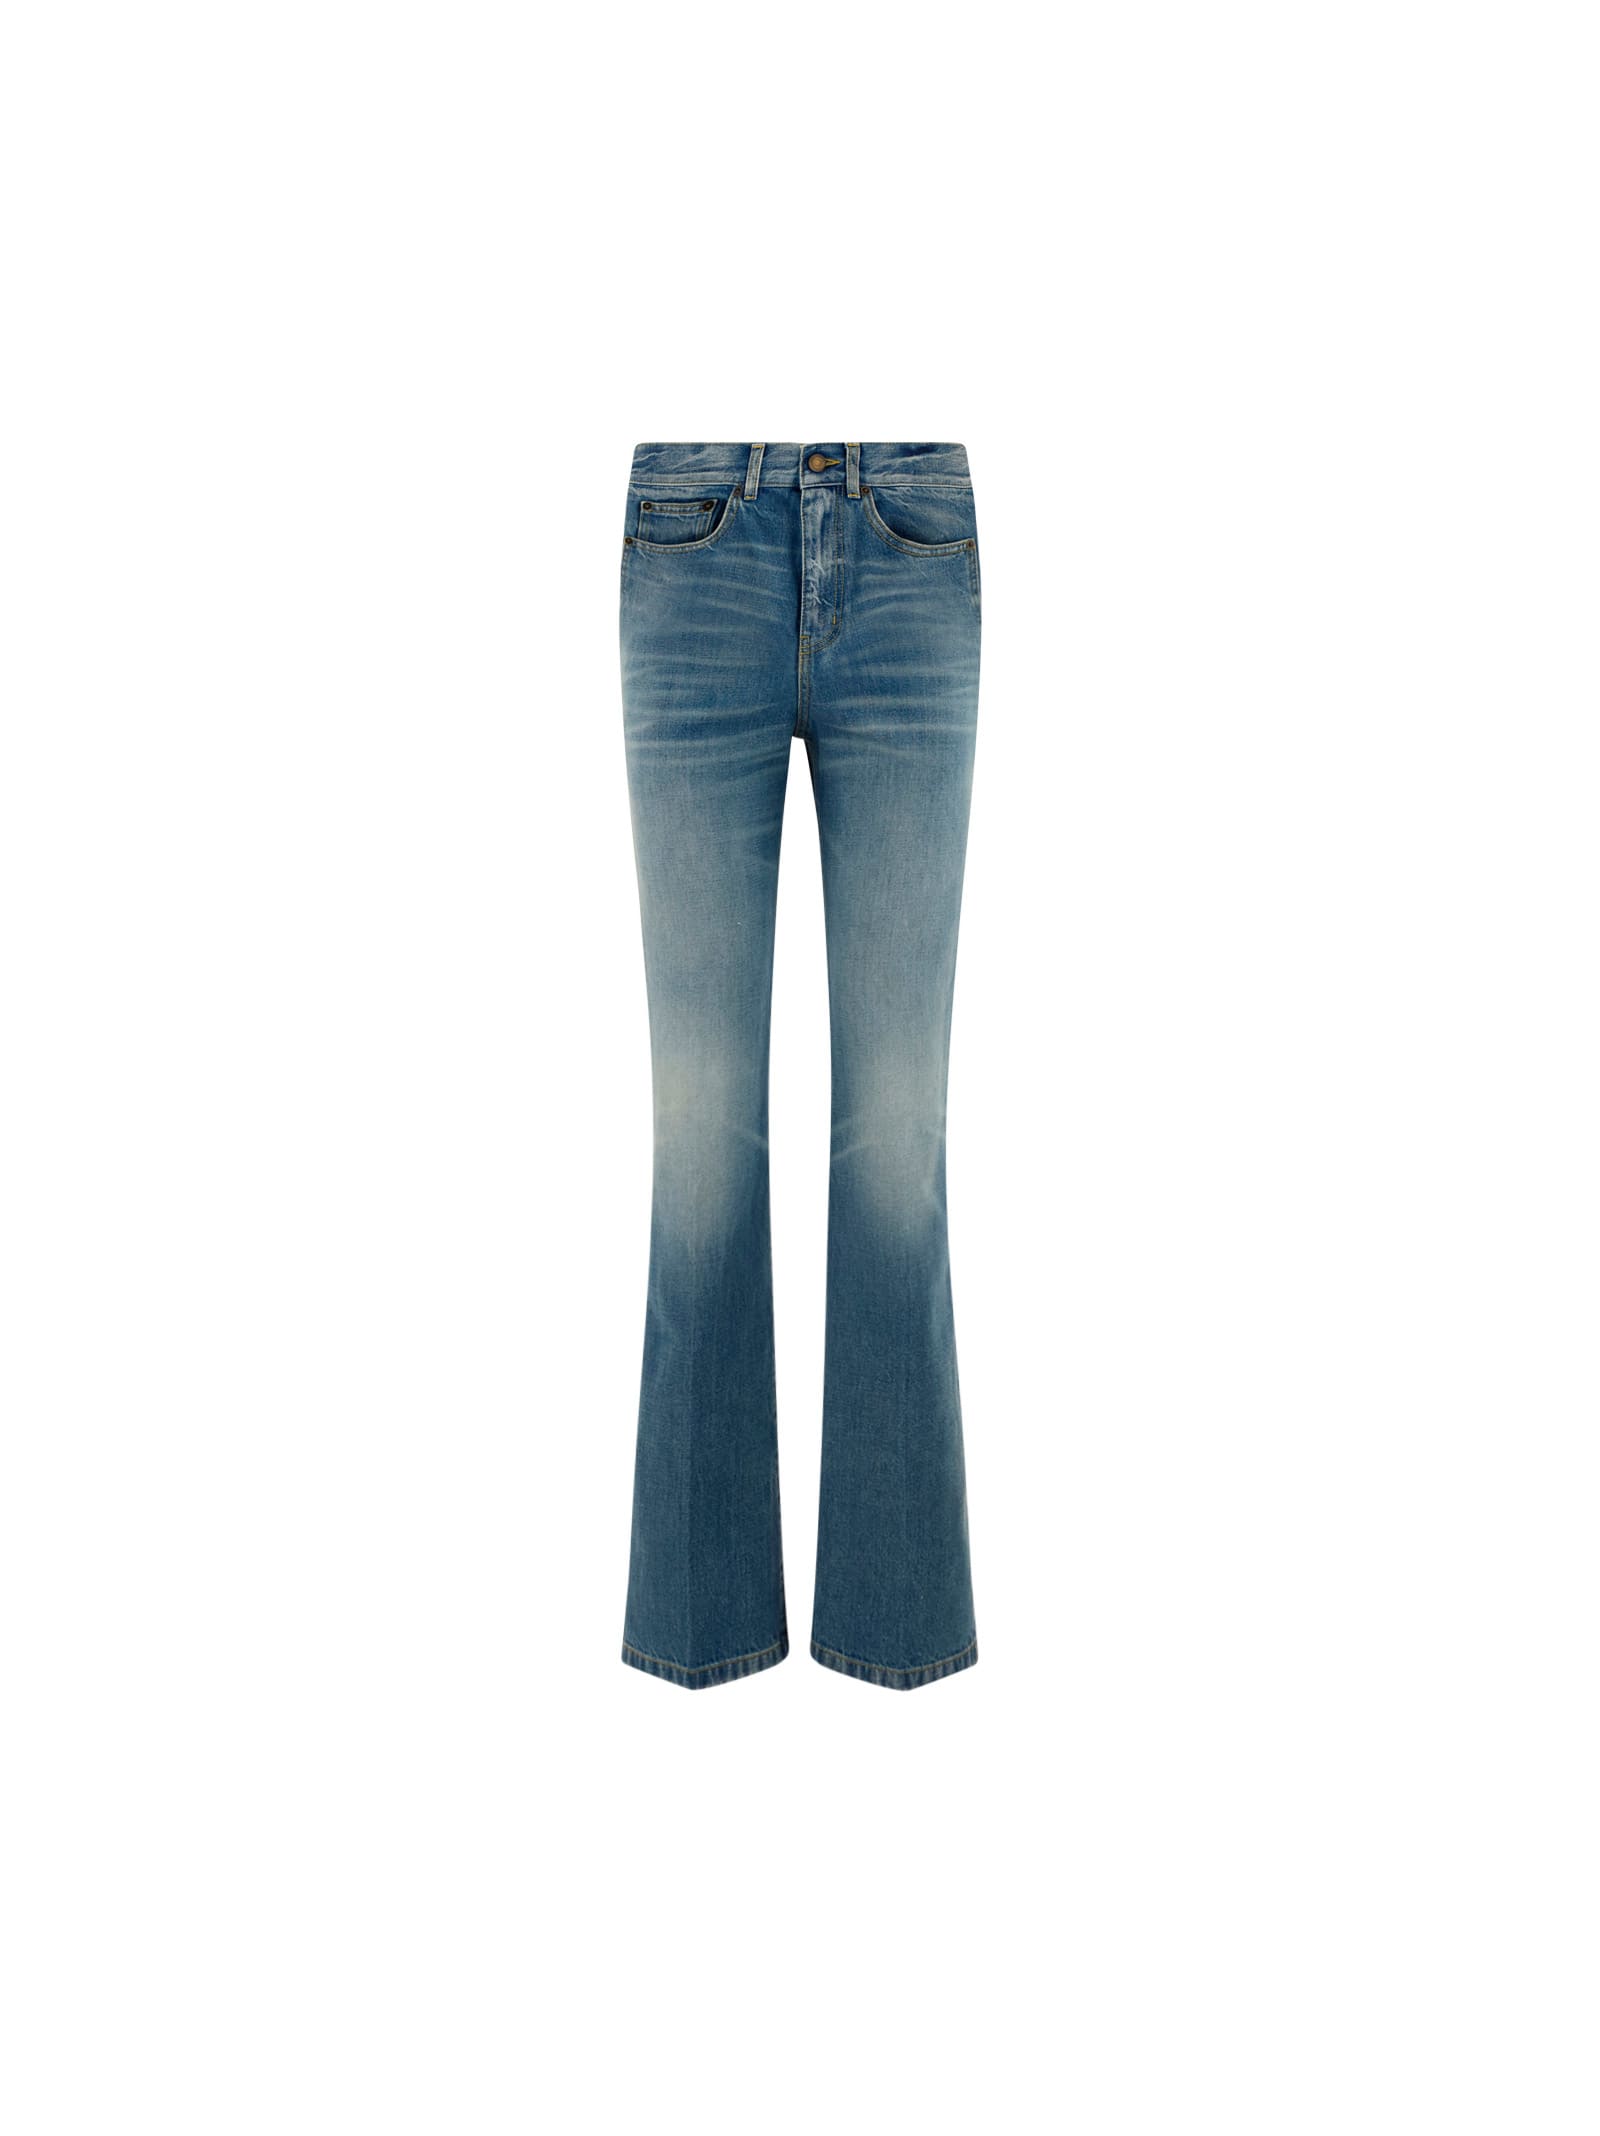 Saint Laurent Denim Jeans In Long Beach Blue